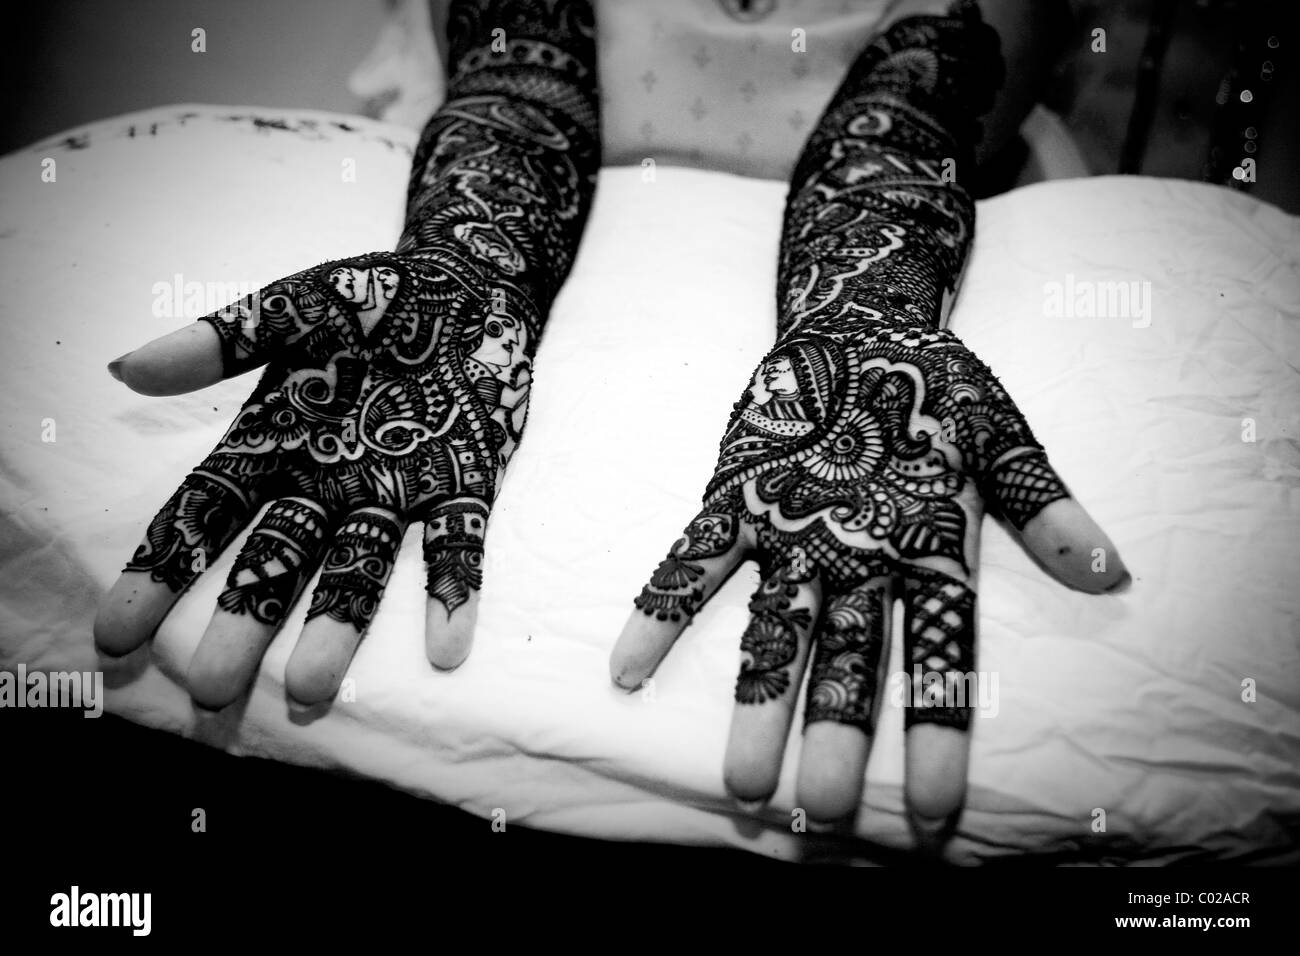 E sposa indiana con tradizionale henné (aka mehndi) vernice che copre le sue braccia e mani al suo giorno di nozze a Nuova Delhi in India. Foto Stock